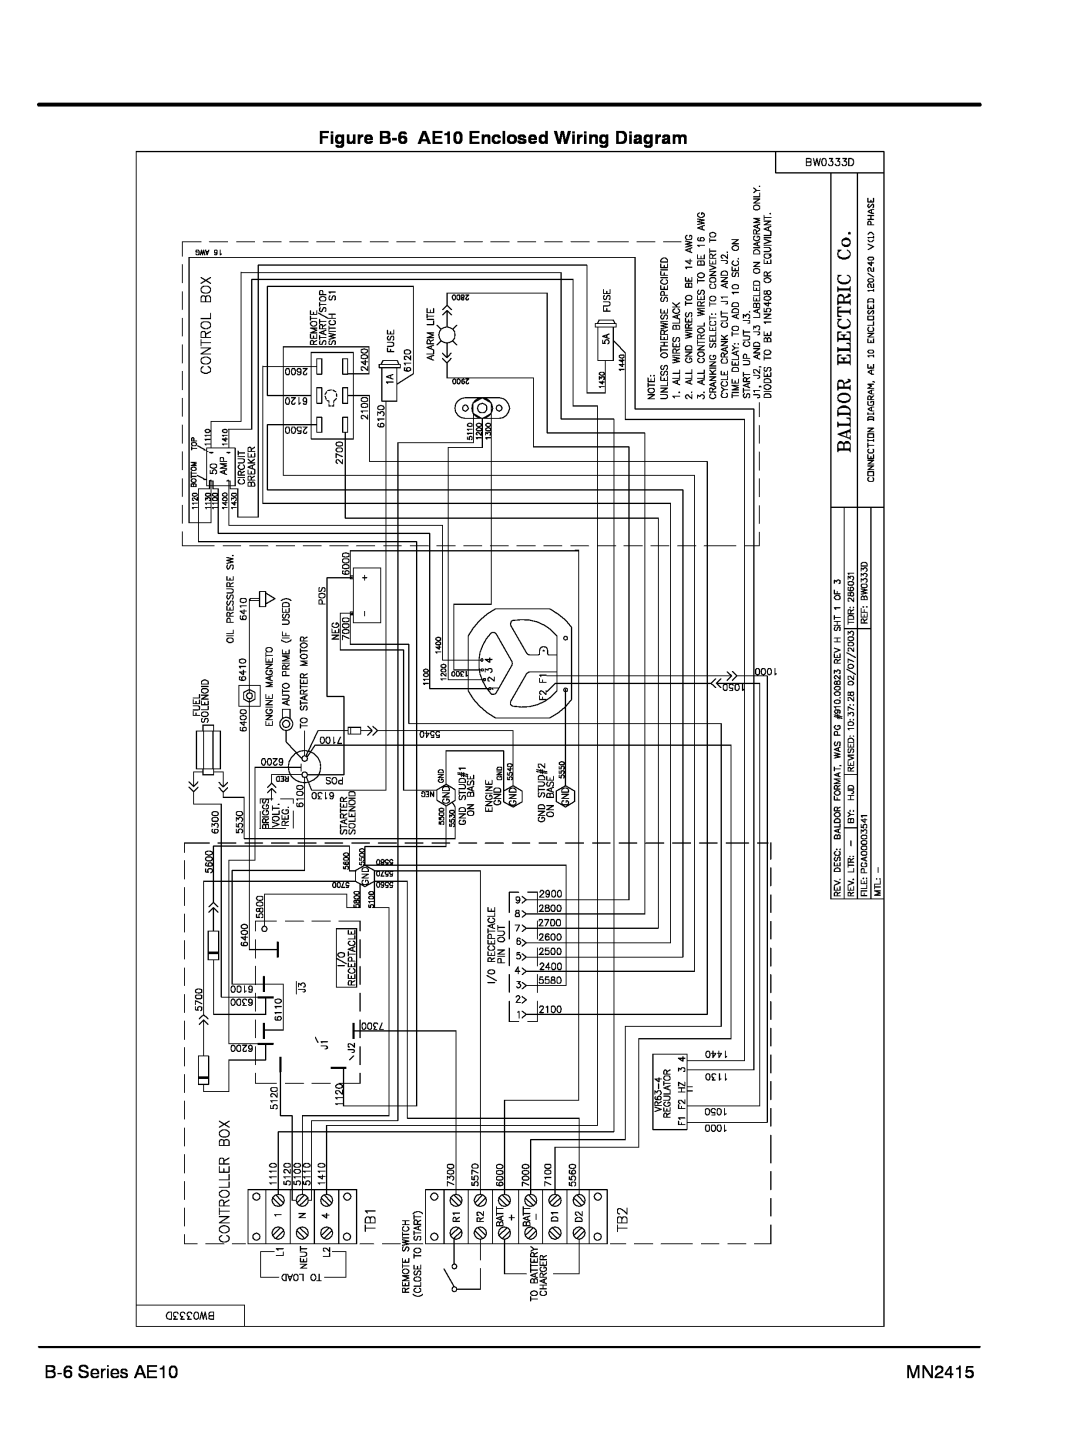 Baldor AE11, AE25, AE8 manual Figure B-6 AE10 Enclosed Wiring Diagram, B-6 Series AE10, MN2415 